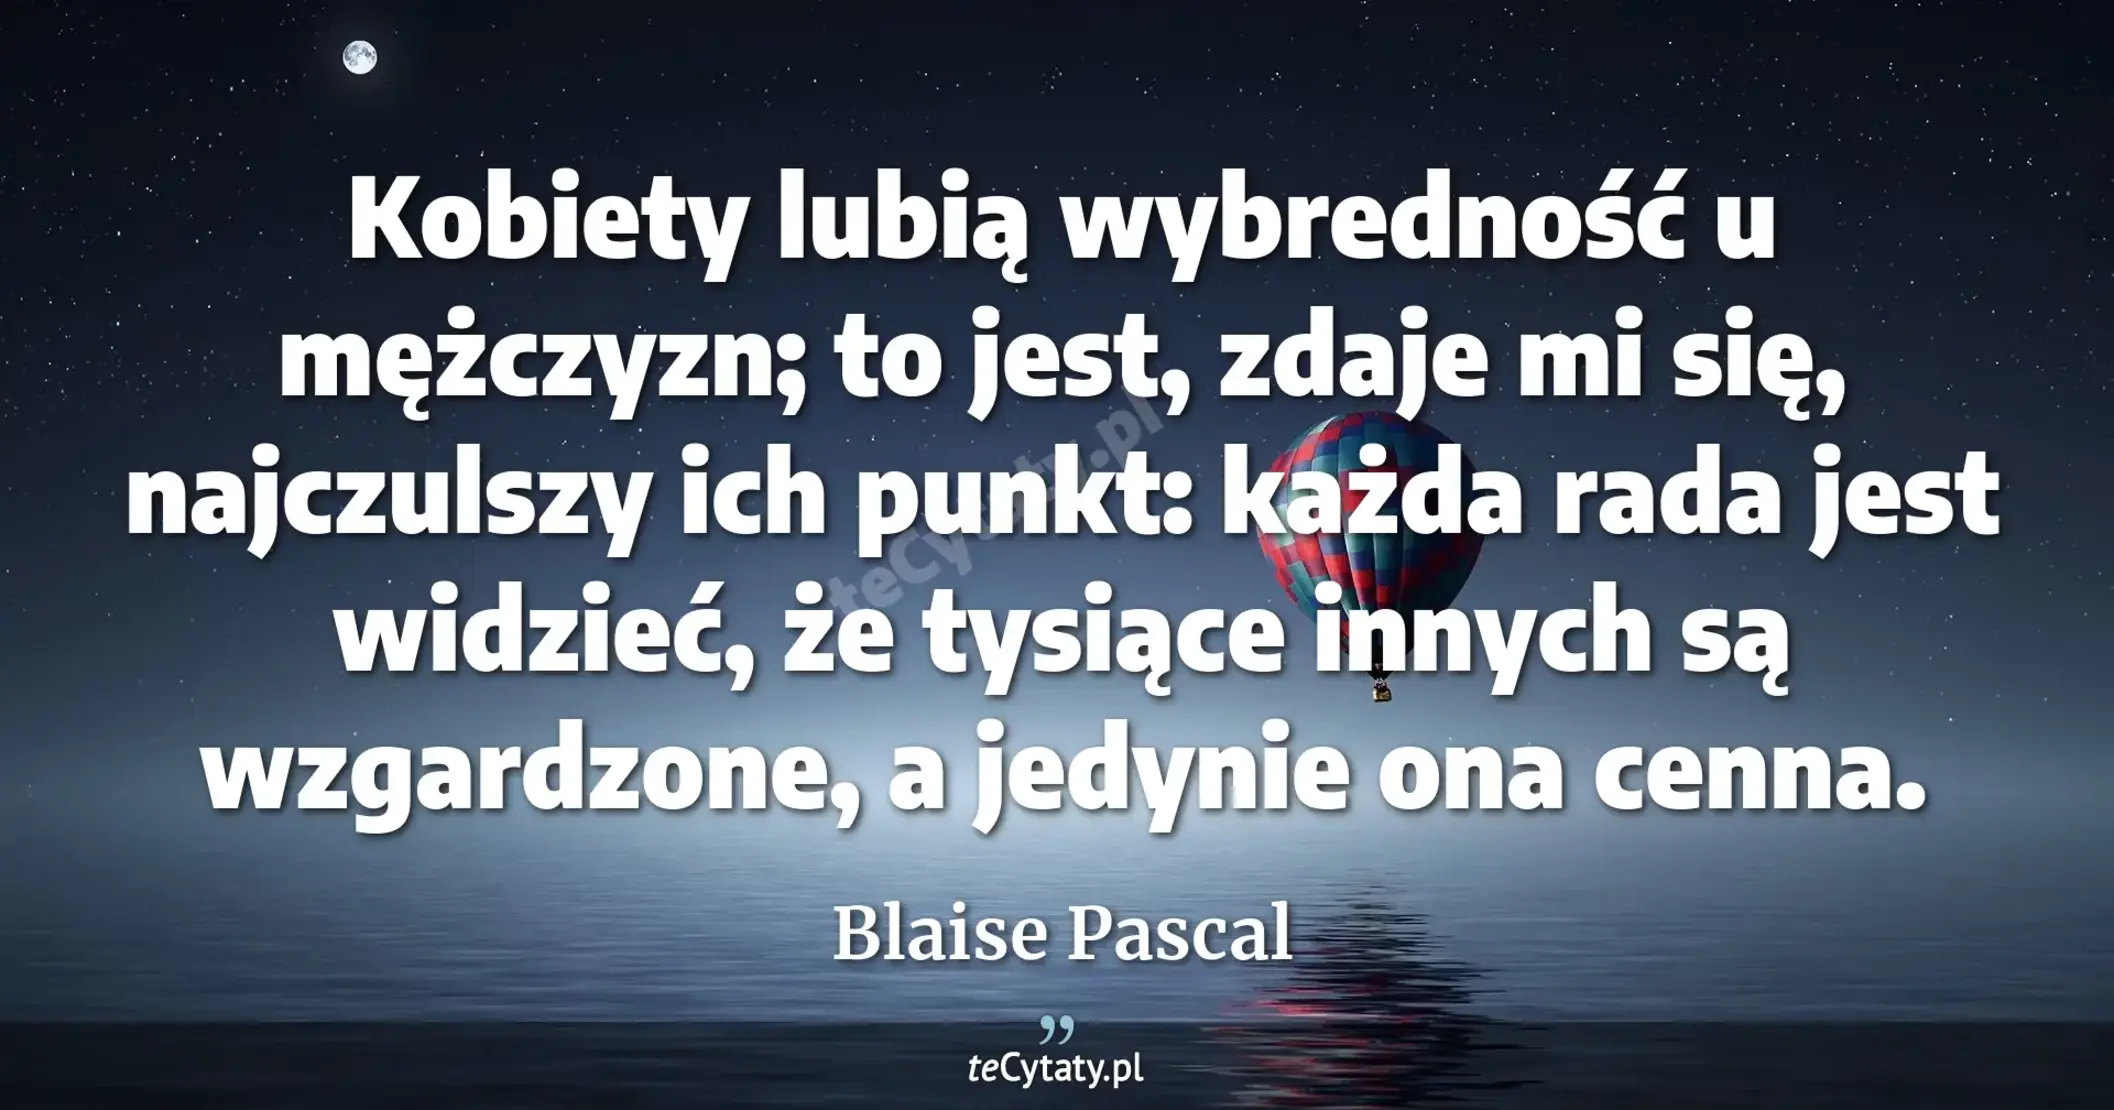 Kobiety lubią wybredność u mężczyzn; to jest, zdaje mi się, najczulszy ich punkt: każda rada jest widzieć, że tysiące innych są wzgardzone, a jedynie ona cenna. - Blaise Pascal